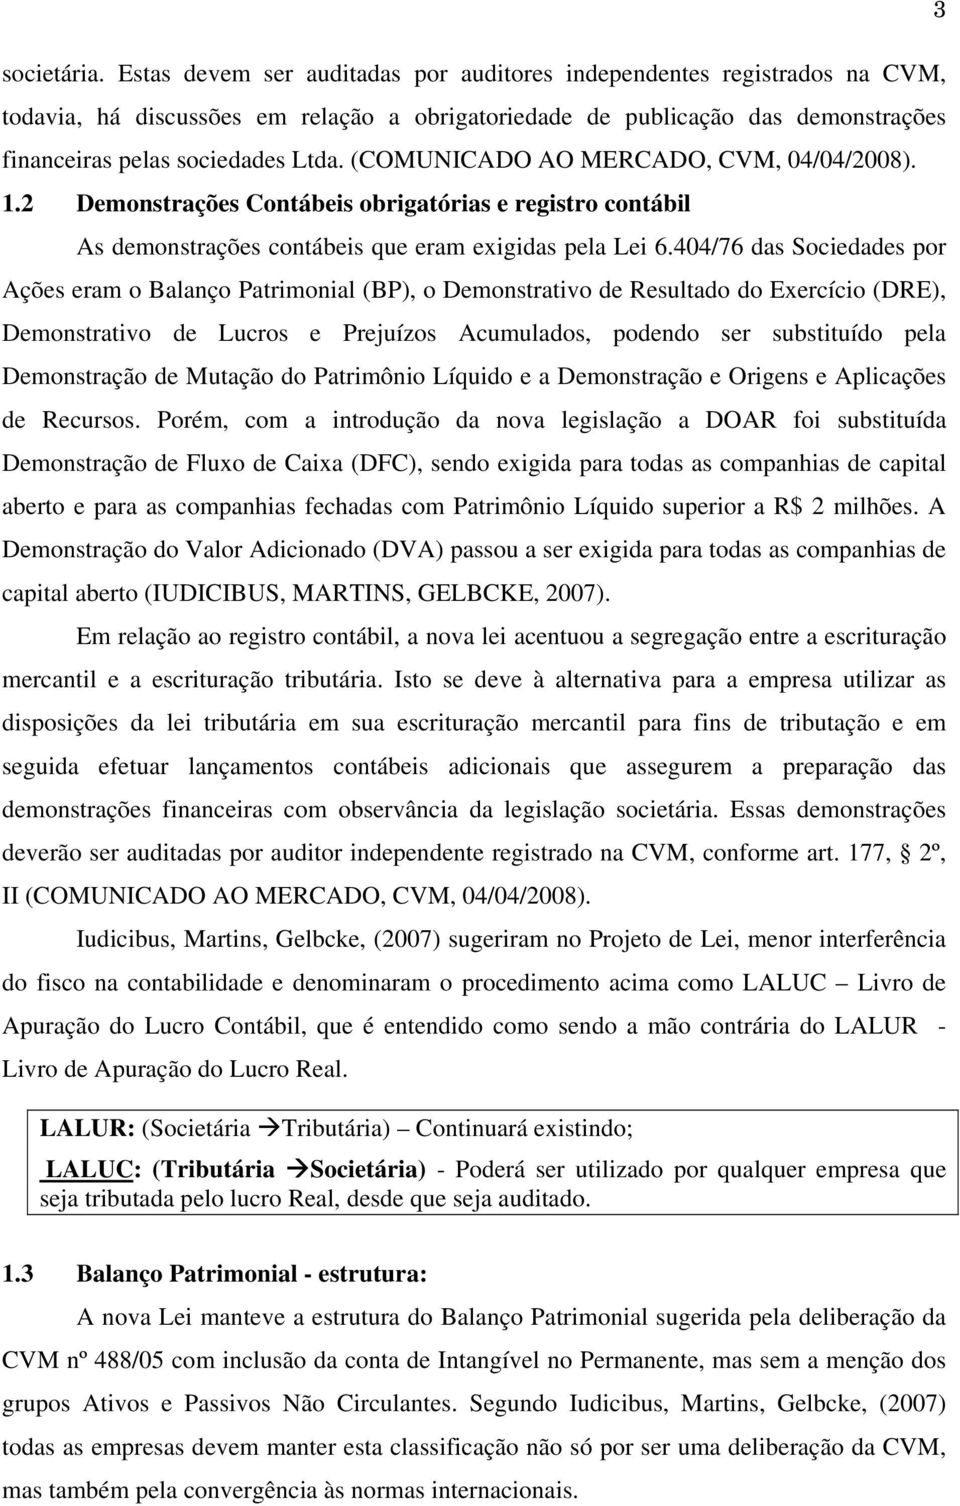 (COMUNICADO AO MERCADO, CVM, 04/04/2008). 1.2 Demonstrações Contábeis obrigatórias e registro contábil As demonstrações contábeis que eram exigidas pela Lei 6.